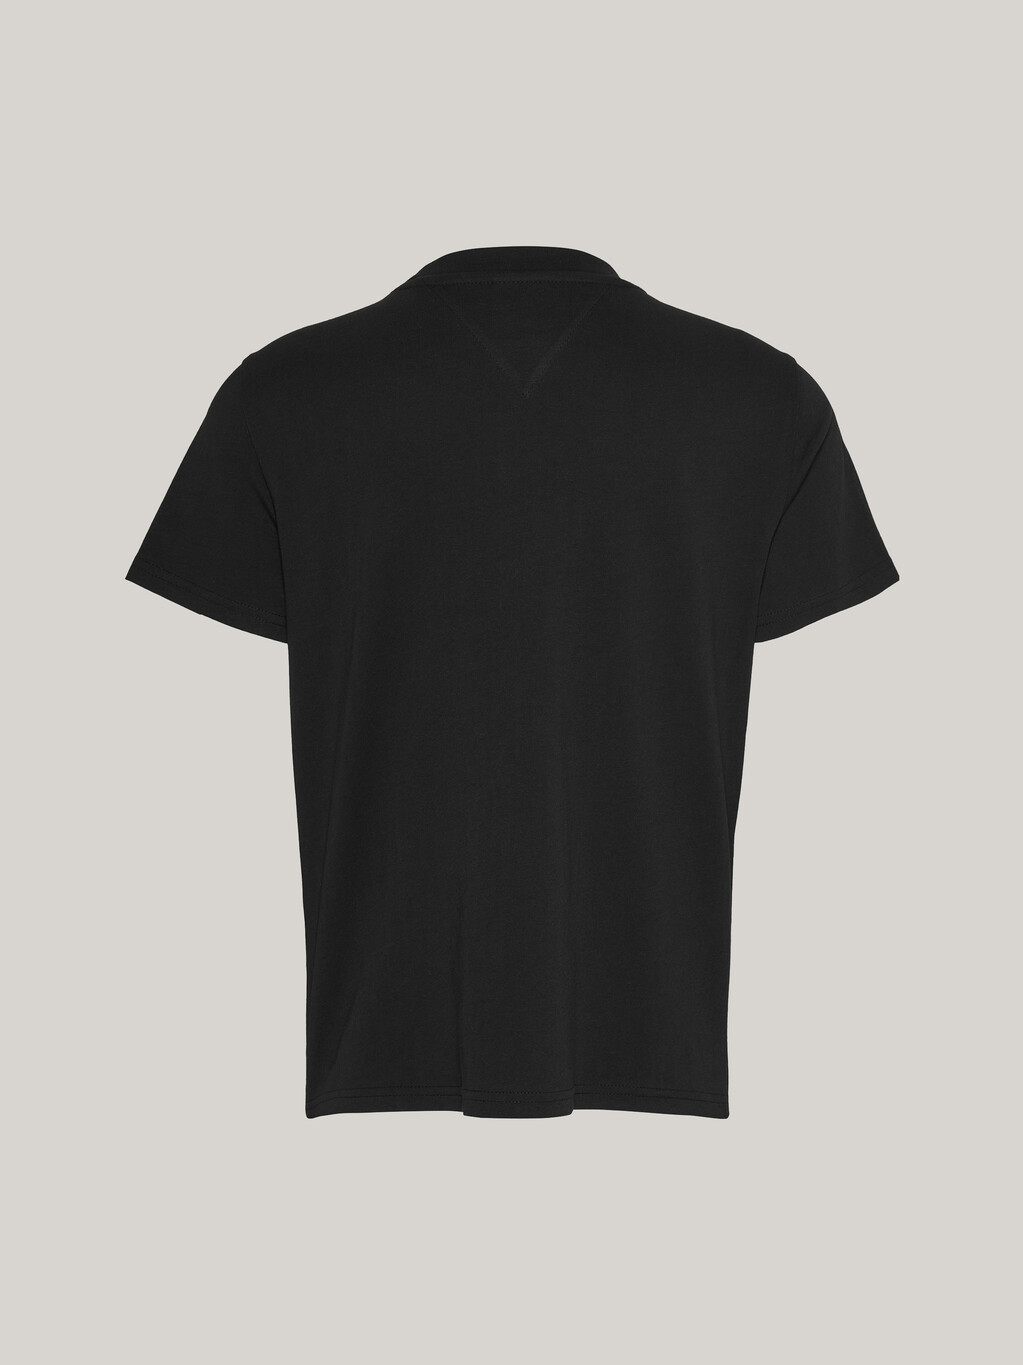 Essential 基本款標誌 T 恤, Black, hi-res